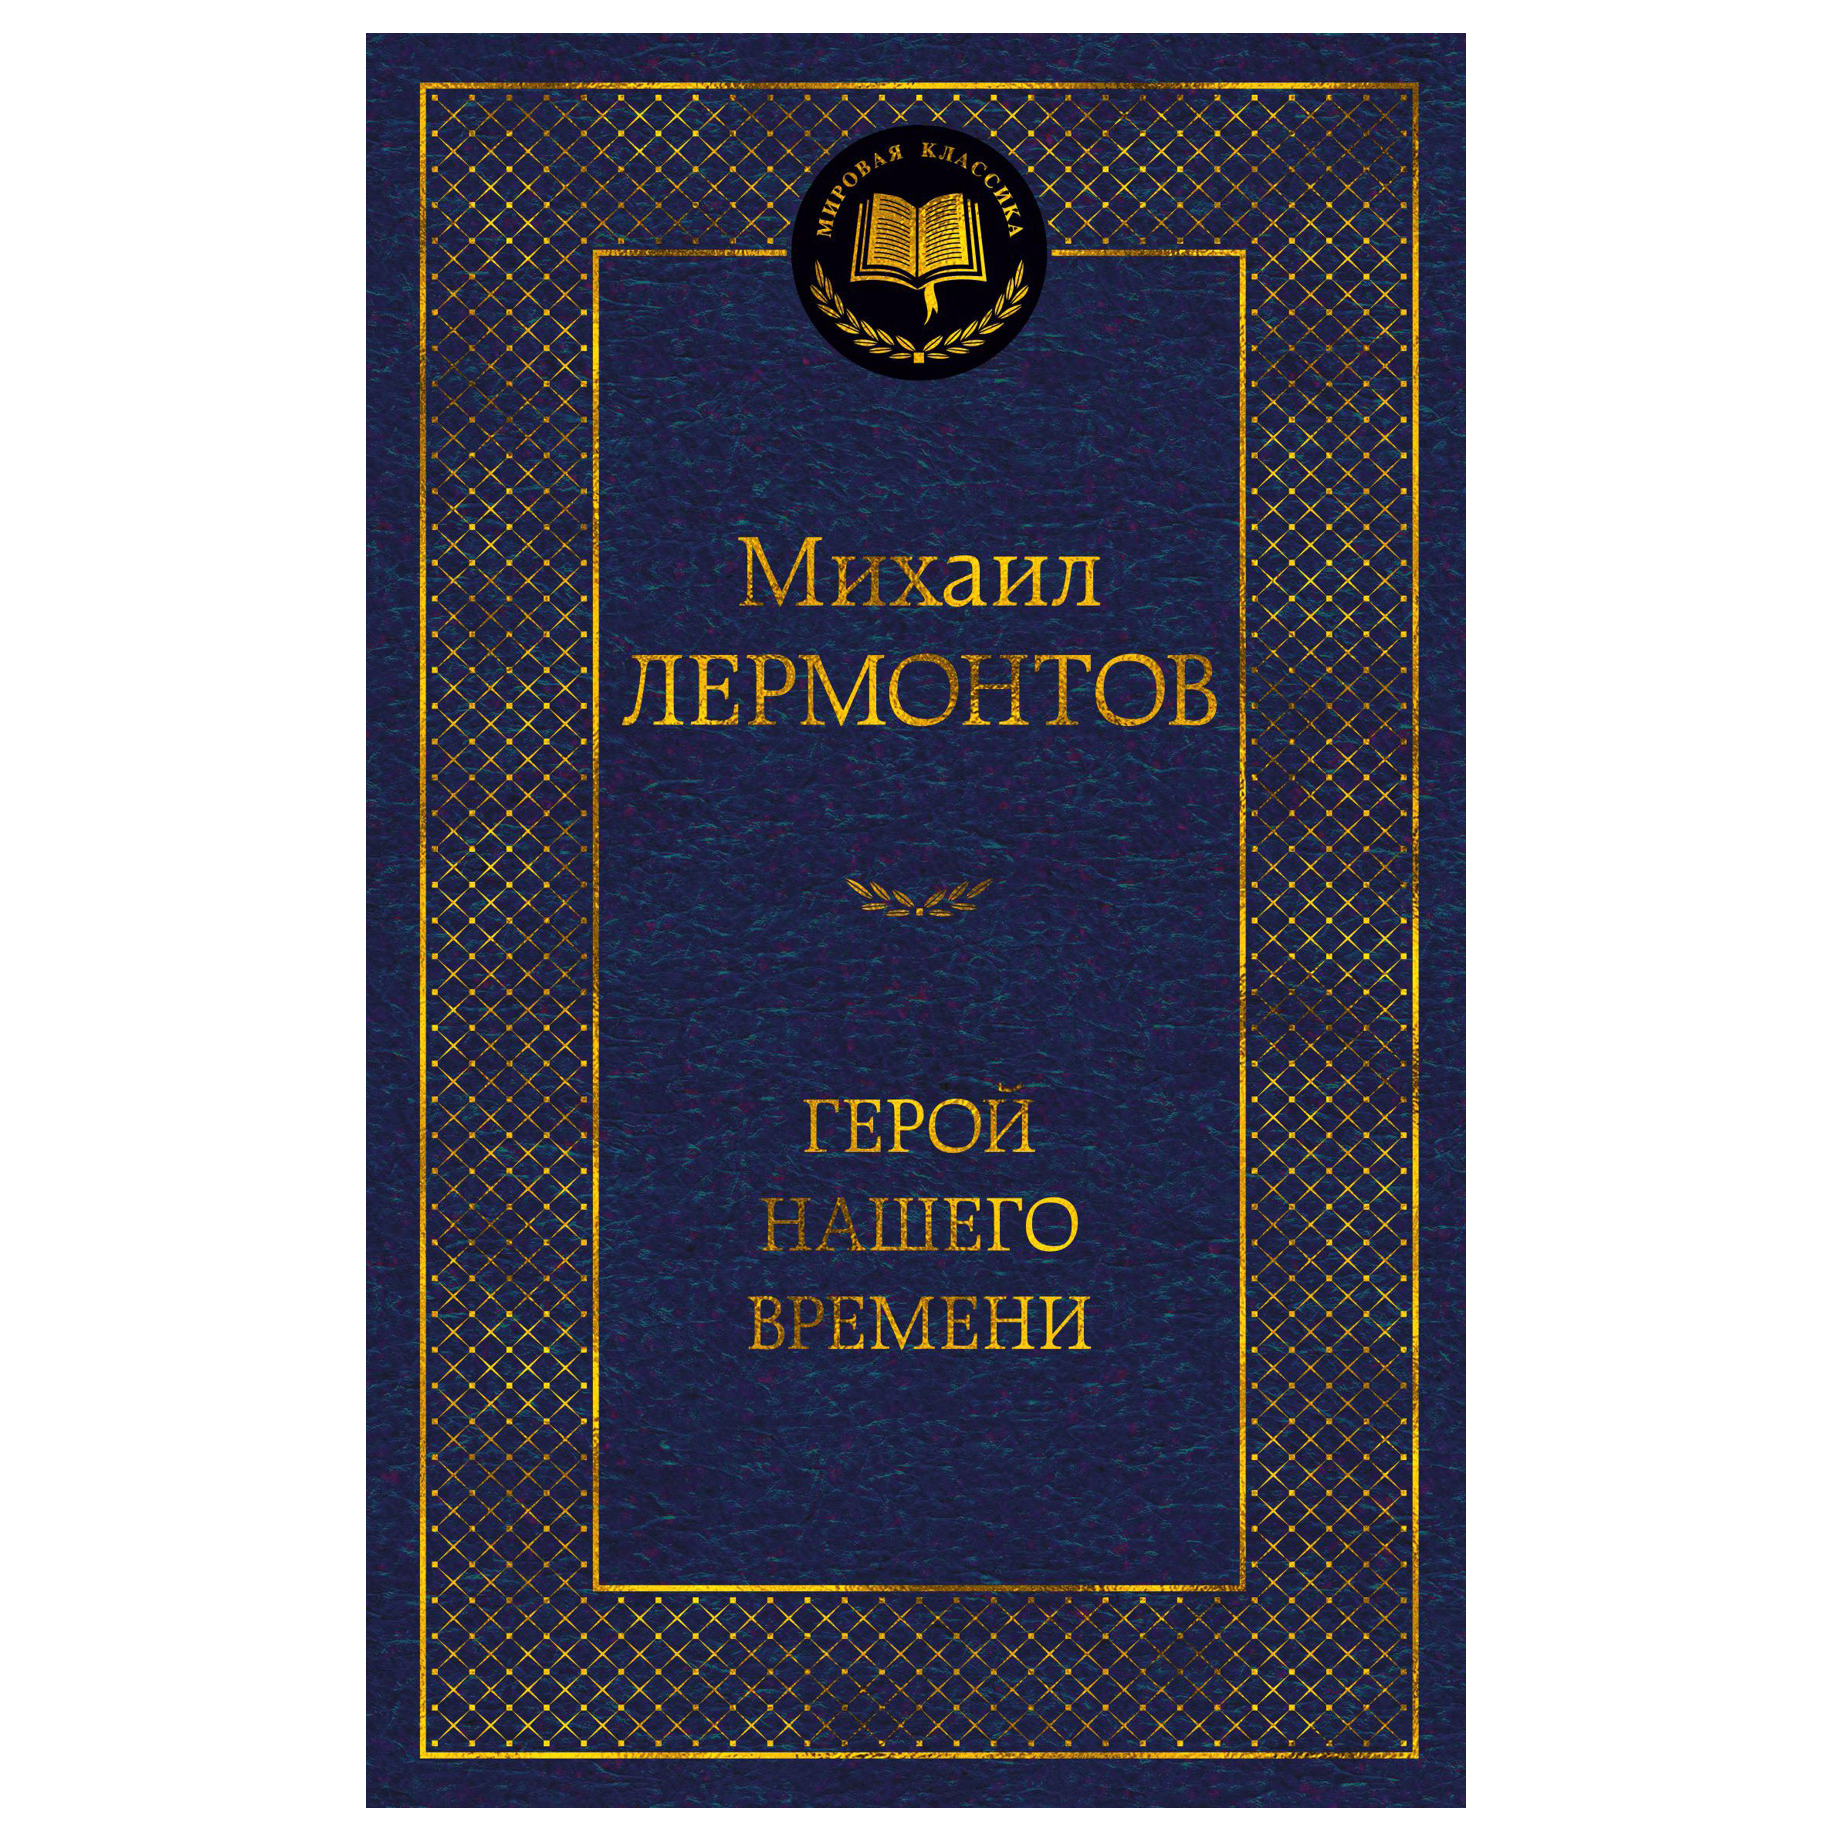 Mikhail Lermontov "Ein Held unserer Zeit"